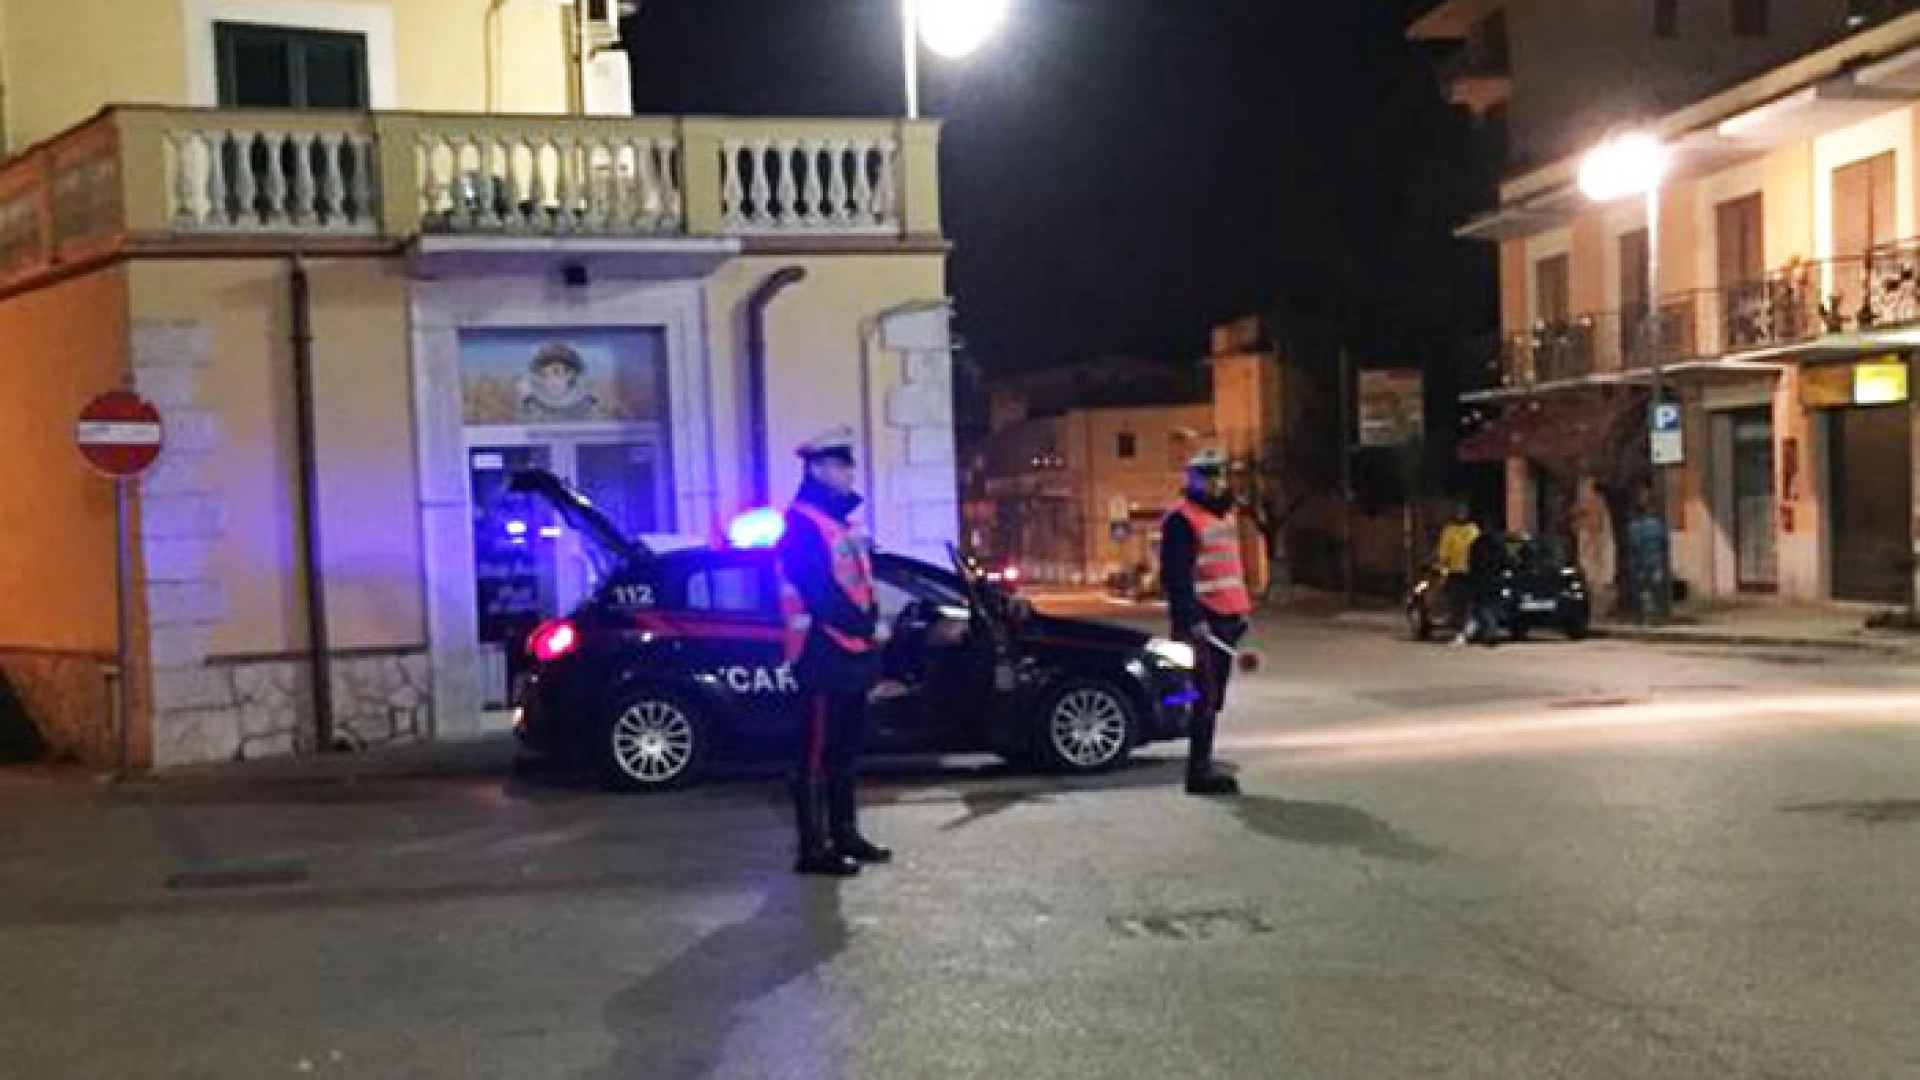 Isernia: ruba l’auto alla compagnia e commette record di infrazioni stradali, oltre 30. Beccato dai Carabinieri sotto effetto di stupefacenti.